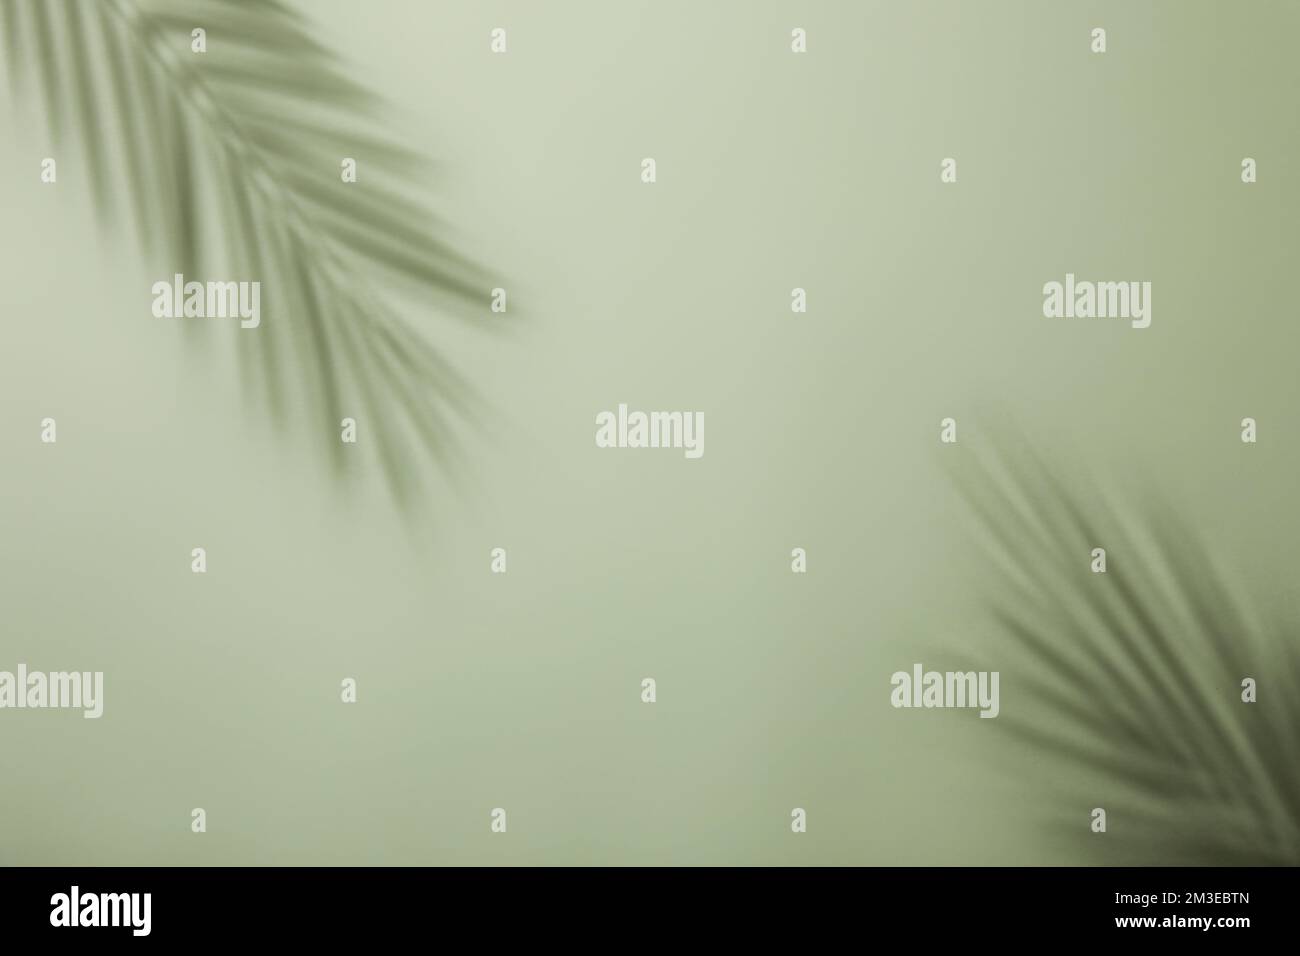 sfondo semplice, minimale e desaturato con foglie di palme e bottiglie di vetro a motivi geometrici con spazio copia al centro Foto Stock